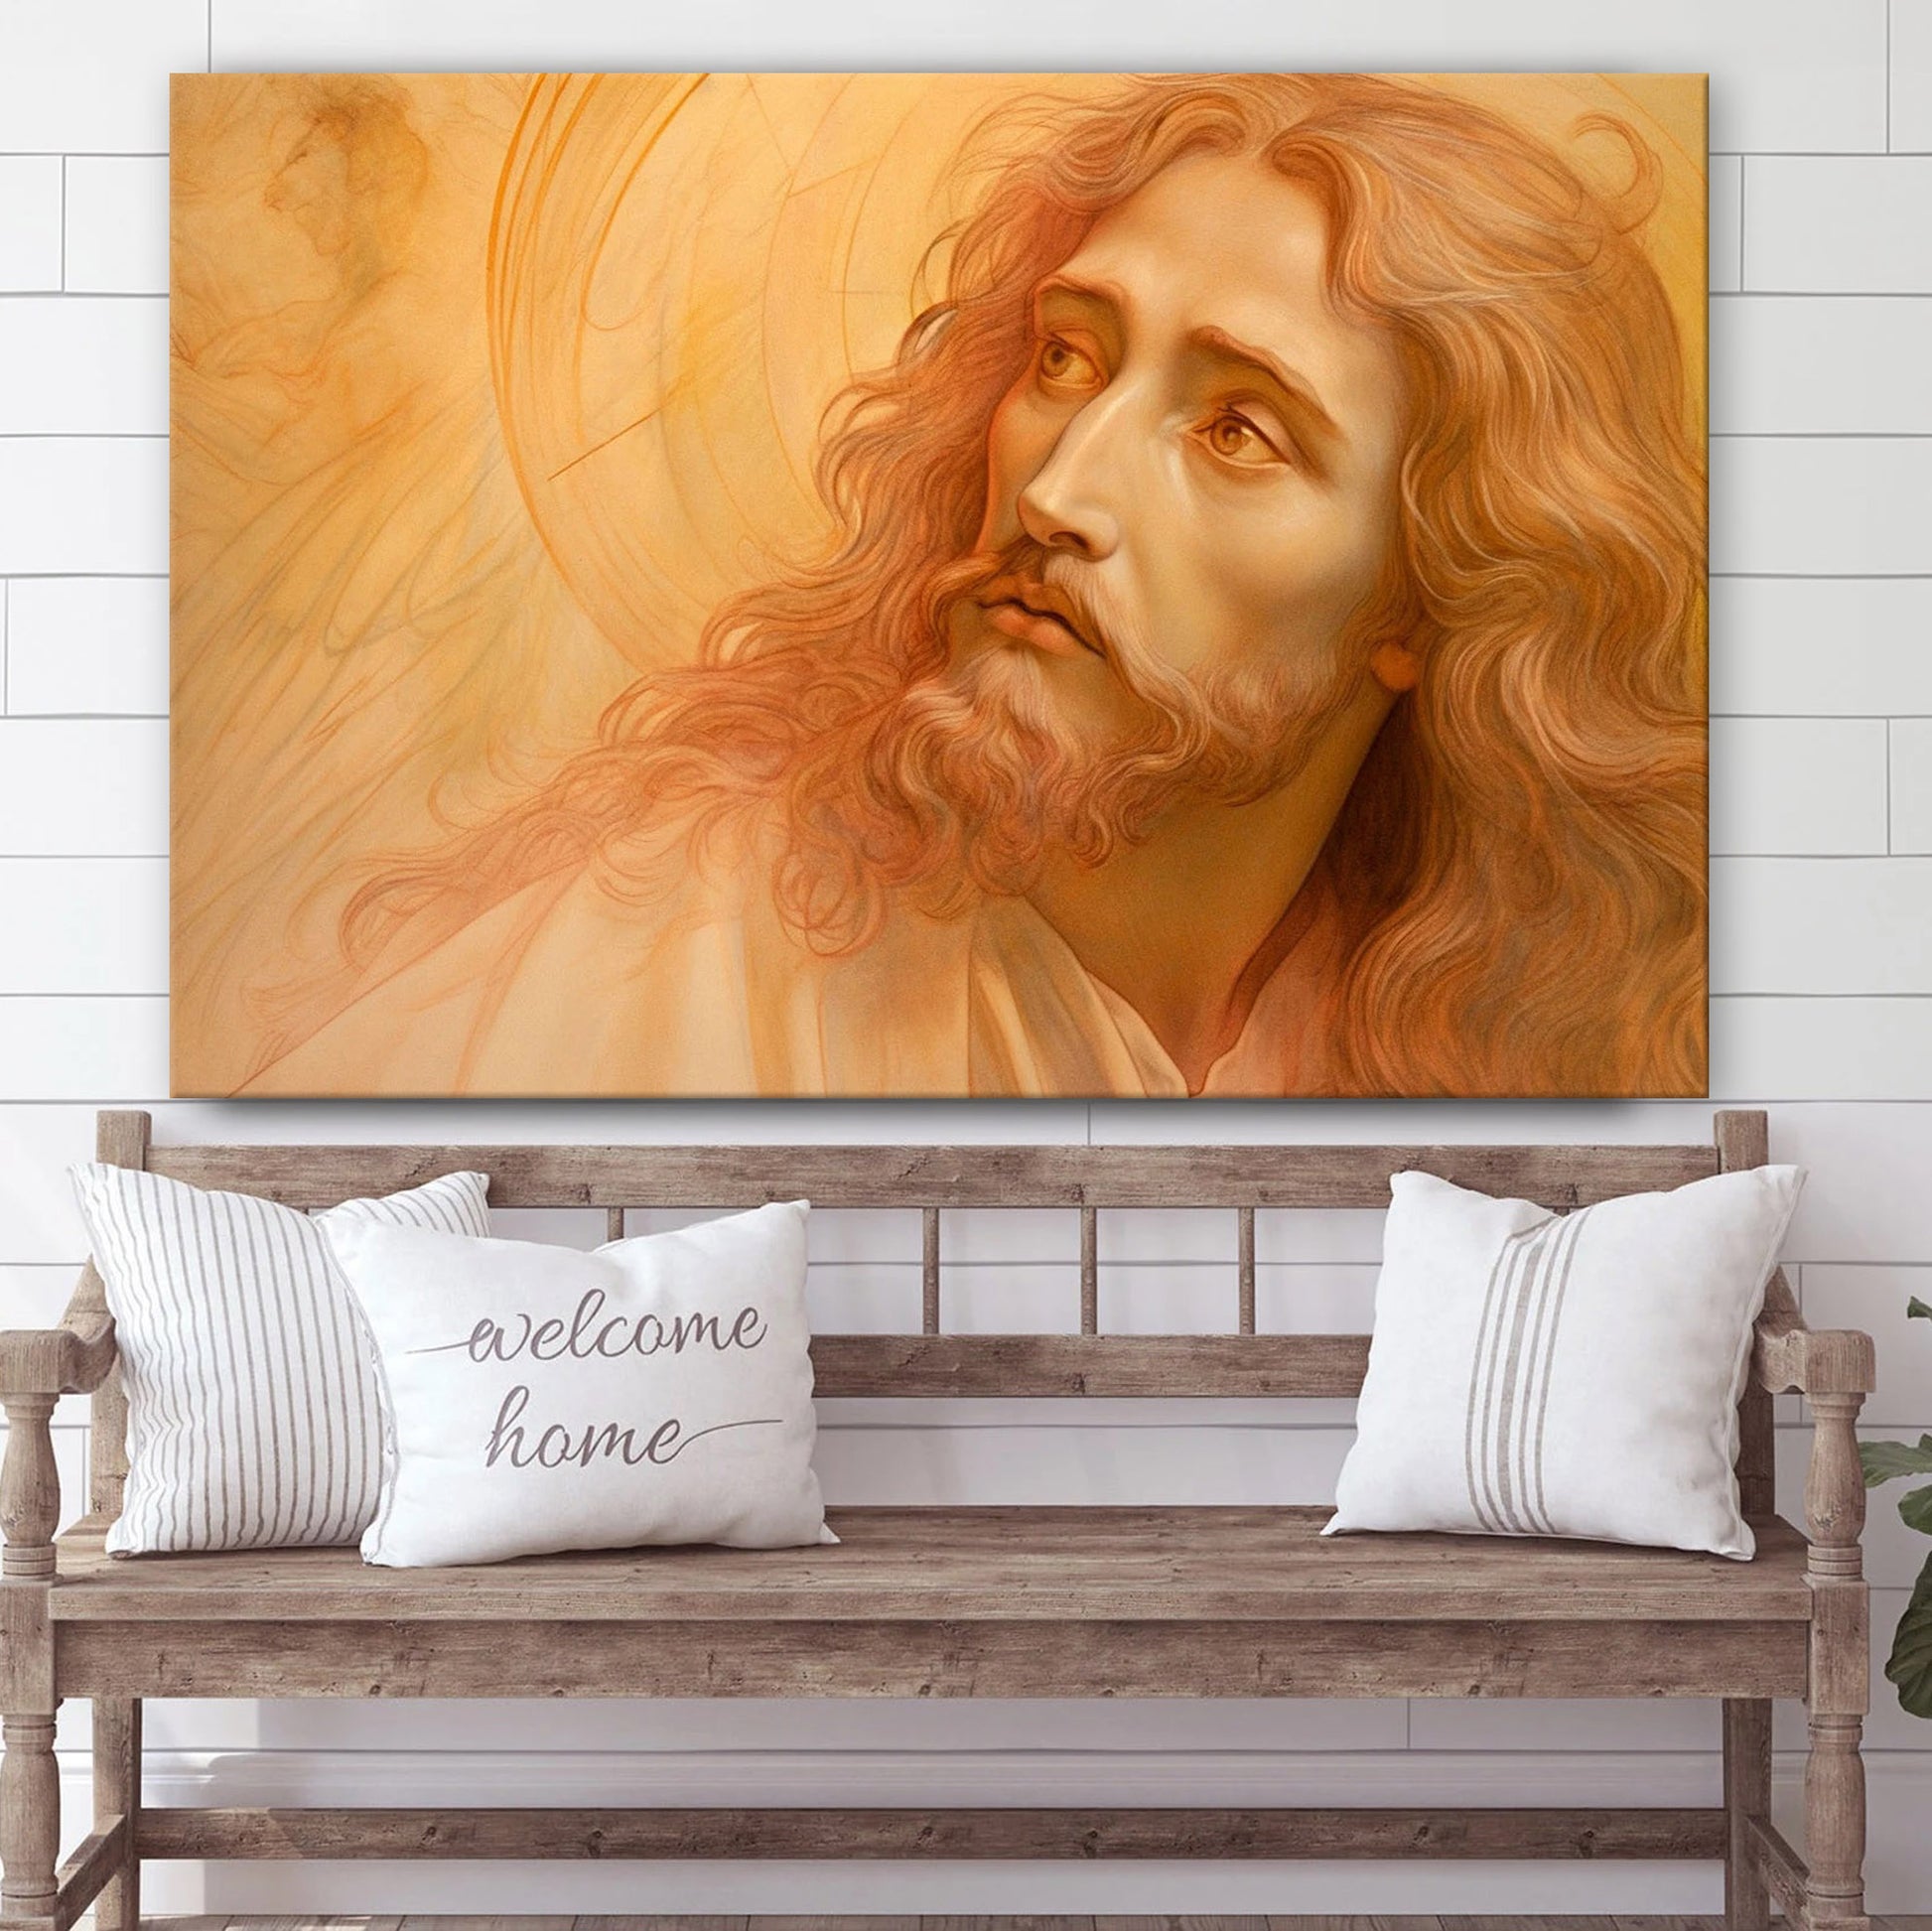 Portrait Of Jesus Christ Art Renaissance Style - Canvas Pictures - Jesus Canvas Art - Christian Wall Art